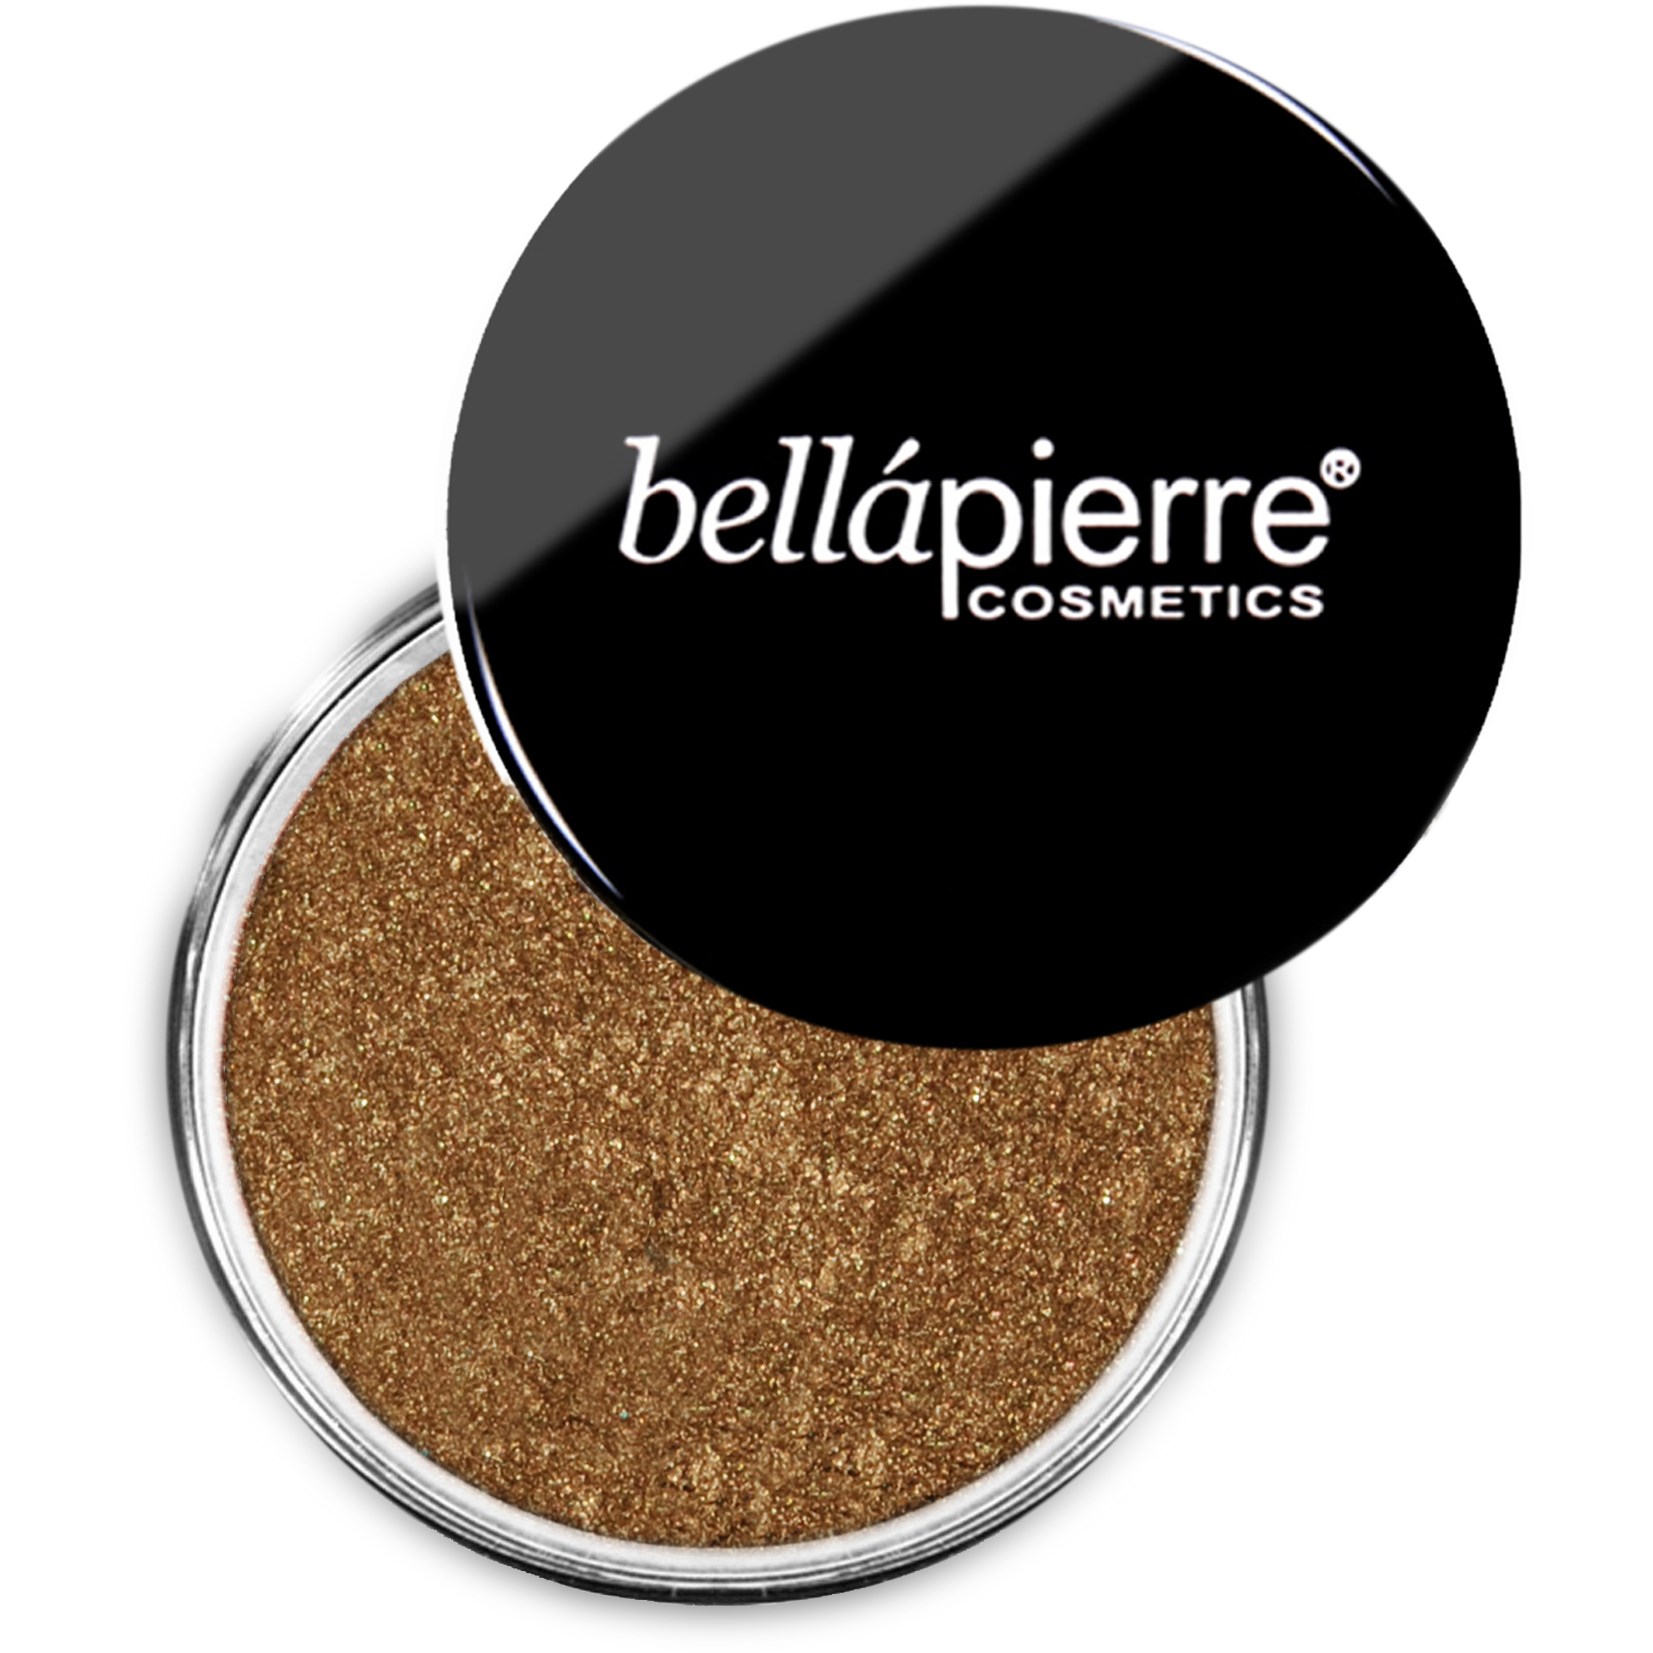 Bellapierre Shimmer Powder - 009 Bronze 2.35g